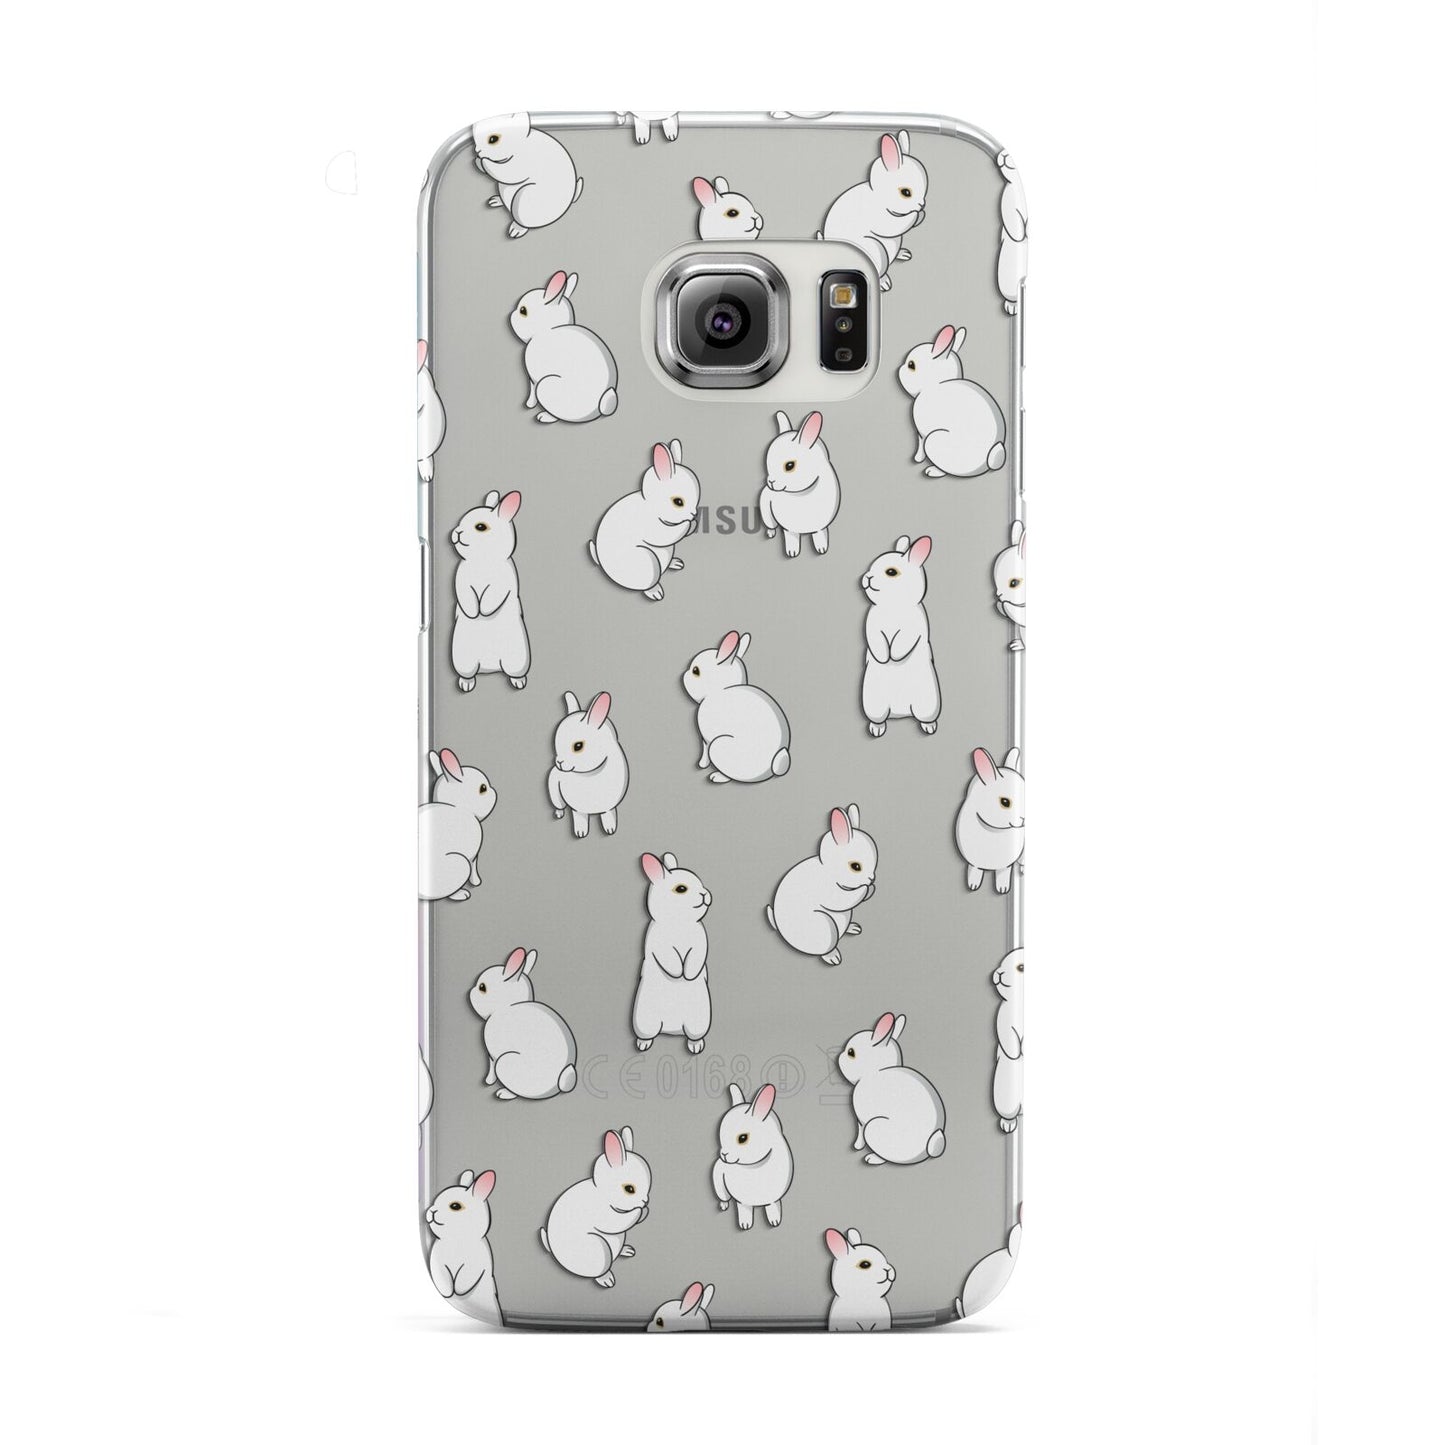 Bunny Rabbit Samsung Galaxy S6 Edge Case